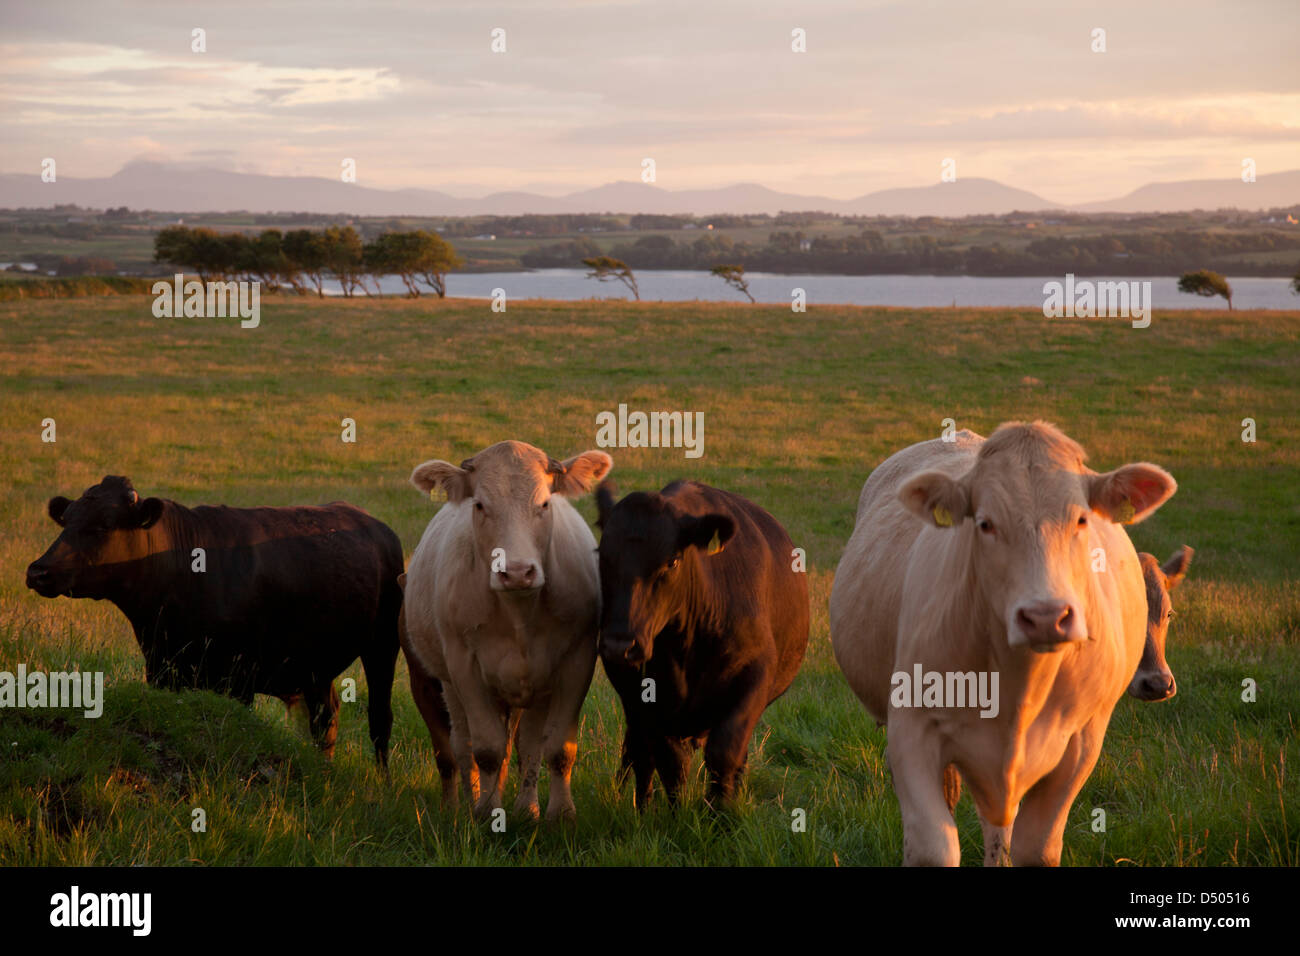 Sera bovini accanto al fiume Moy, nella contea di Sligo, Irlanda. Foto Stock